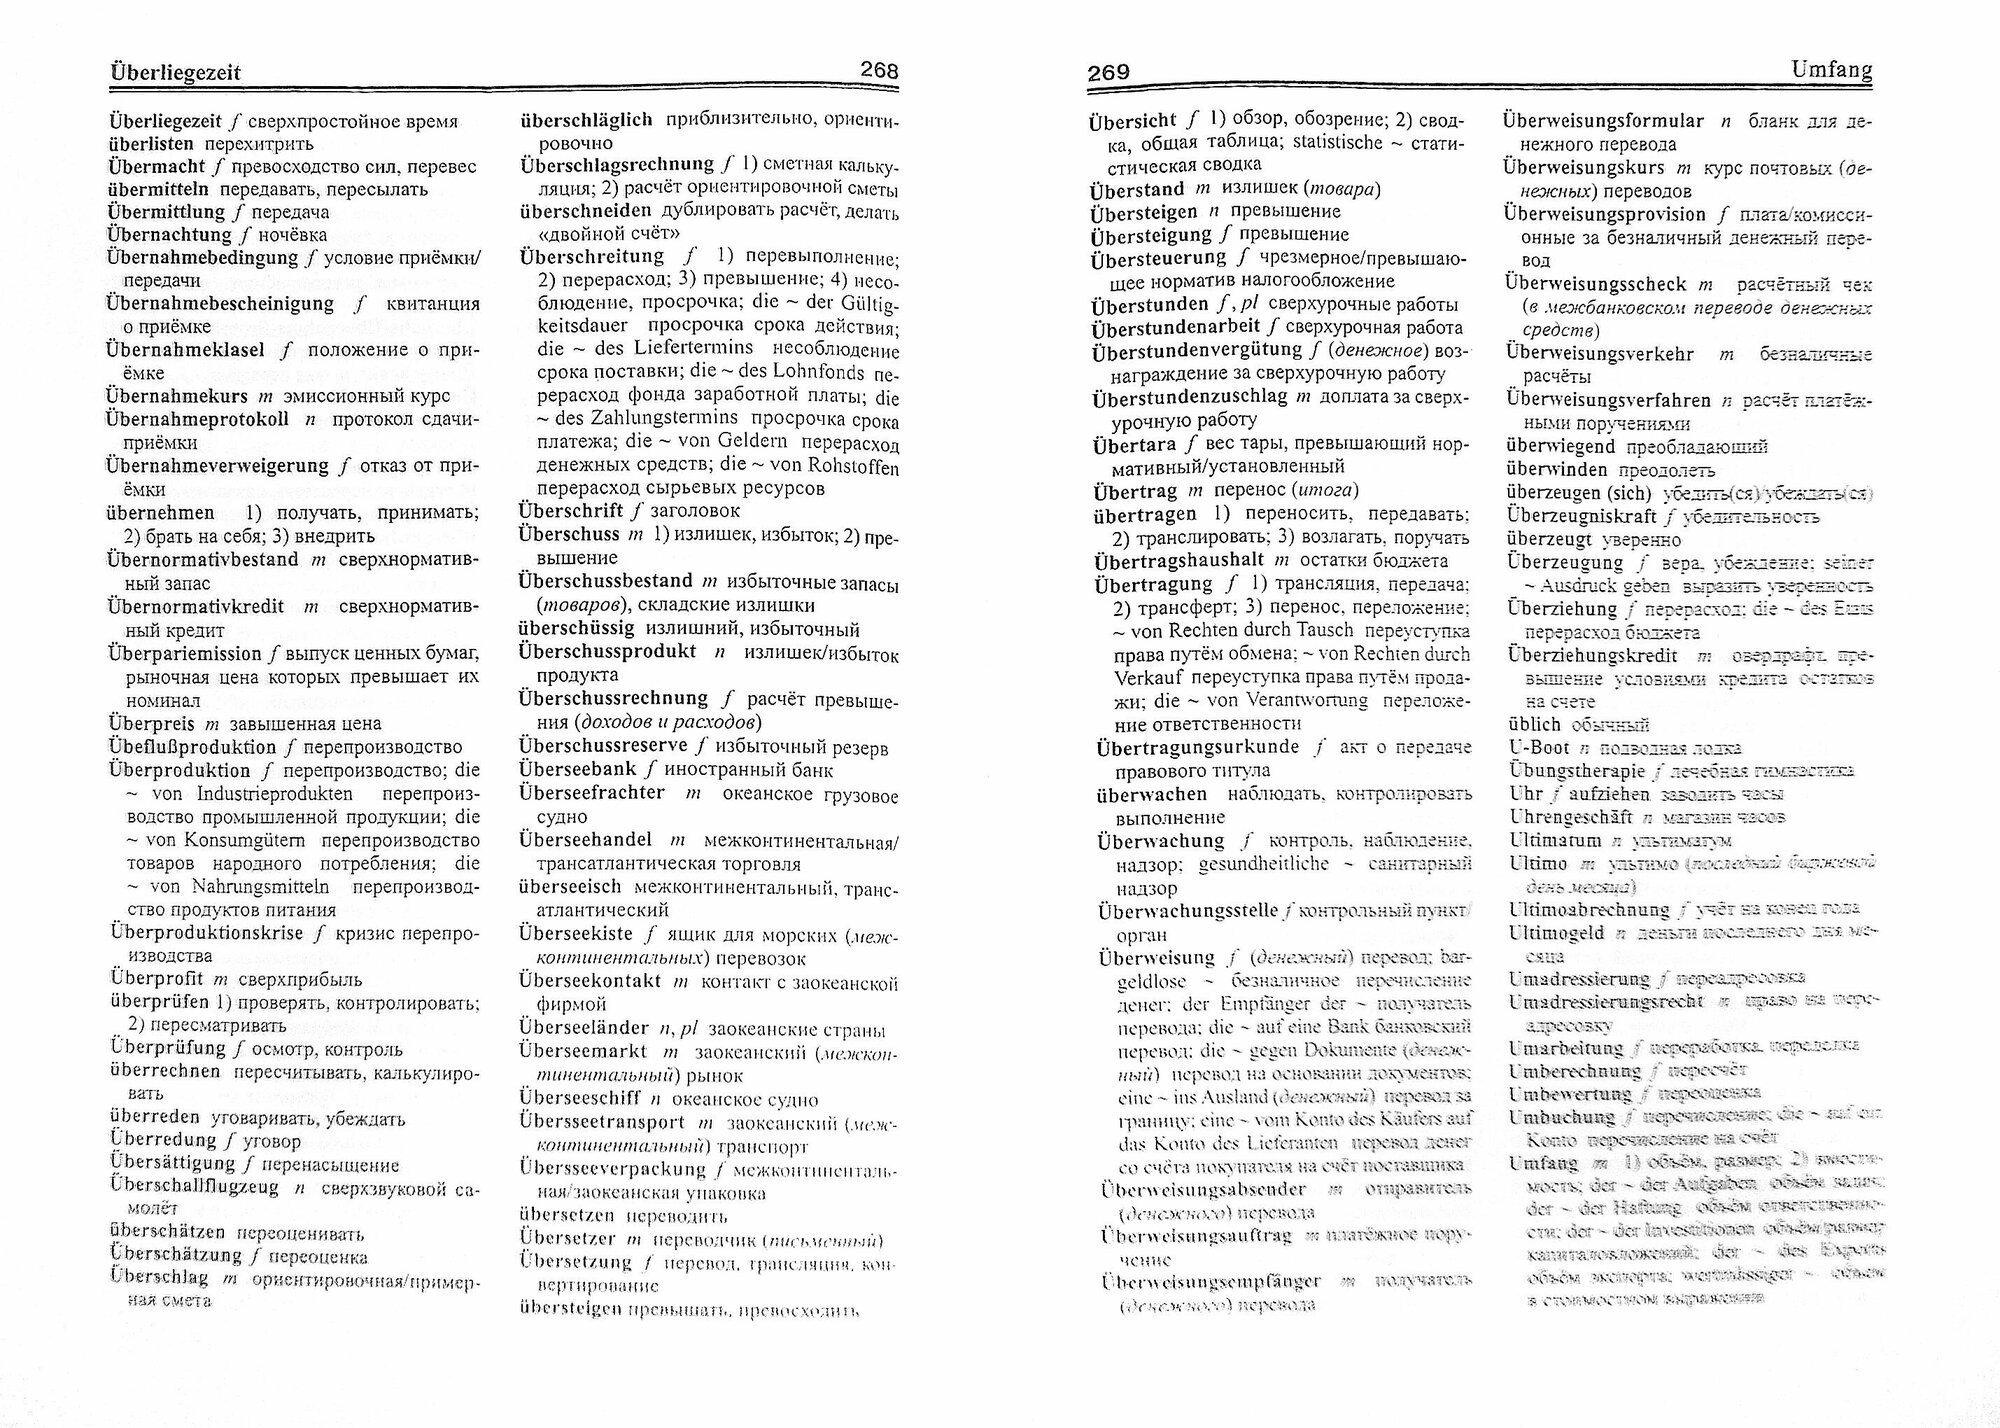 Немецко-русский русско-немецкий словарь по экономике, финансам и бизнесу - фото №2